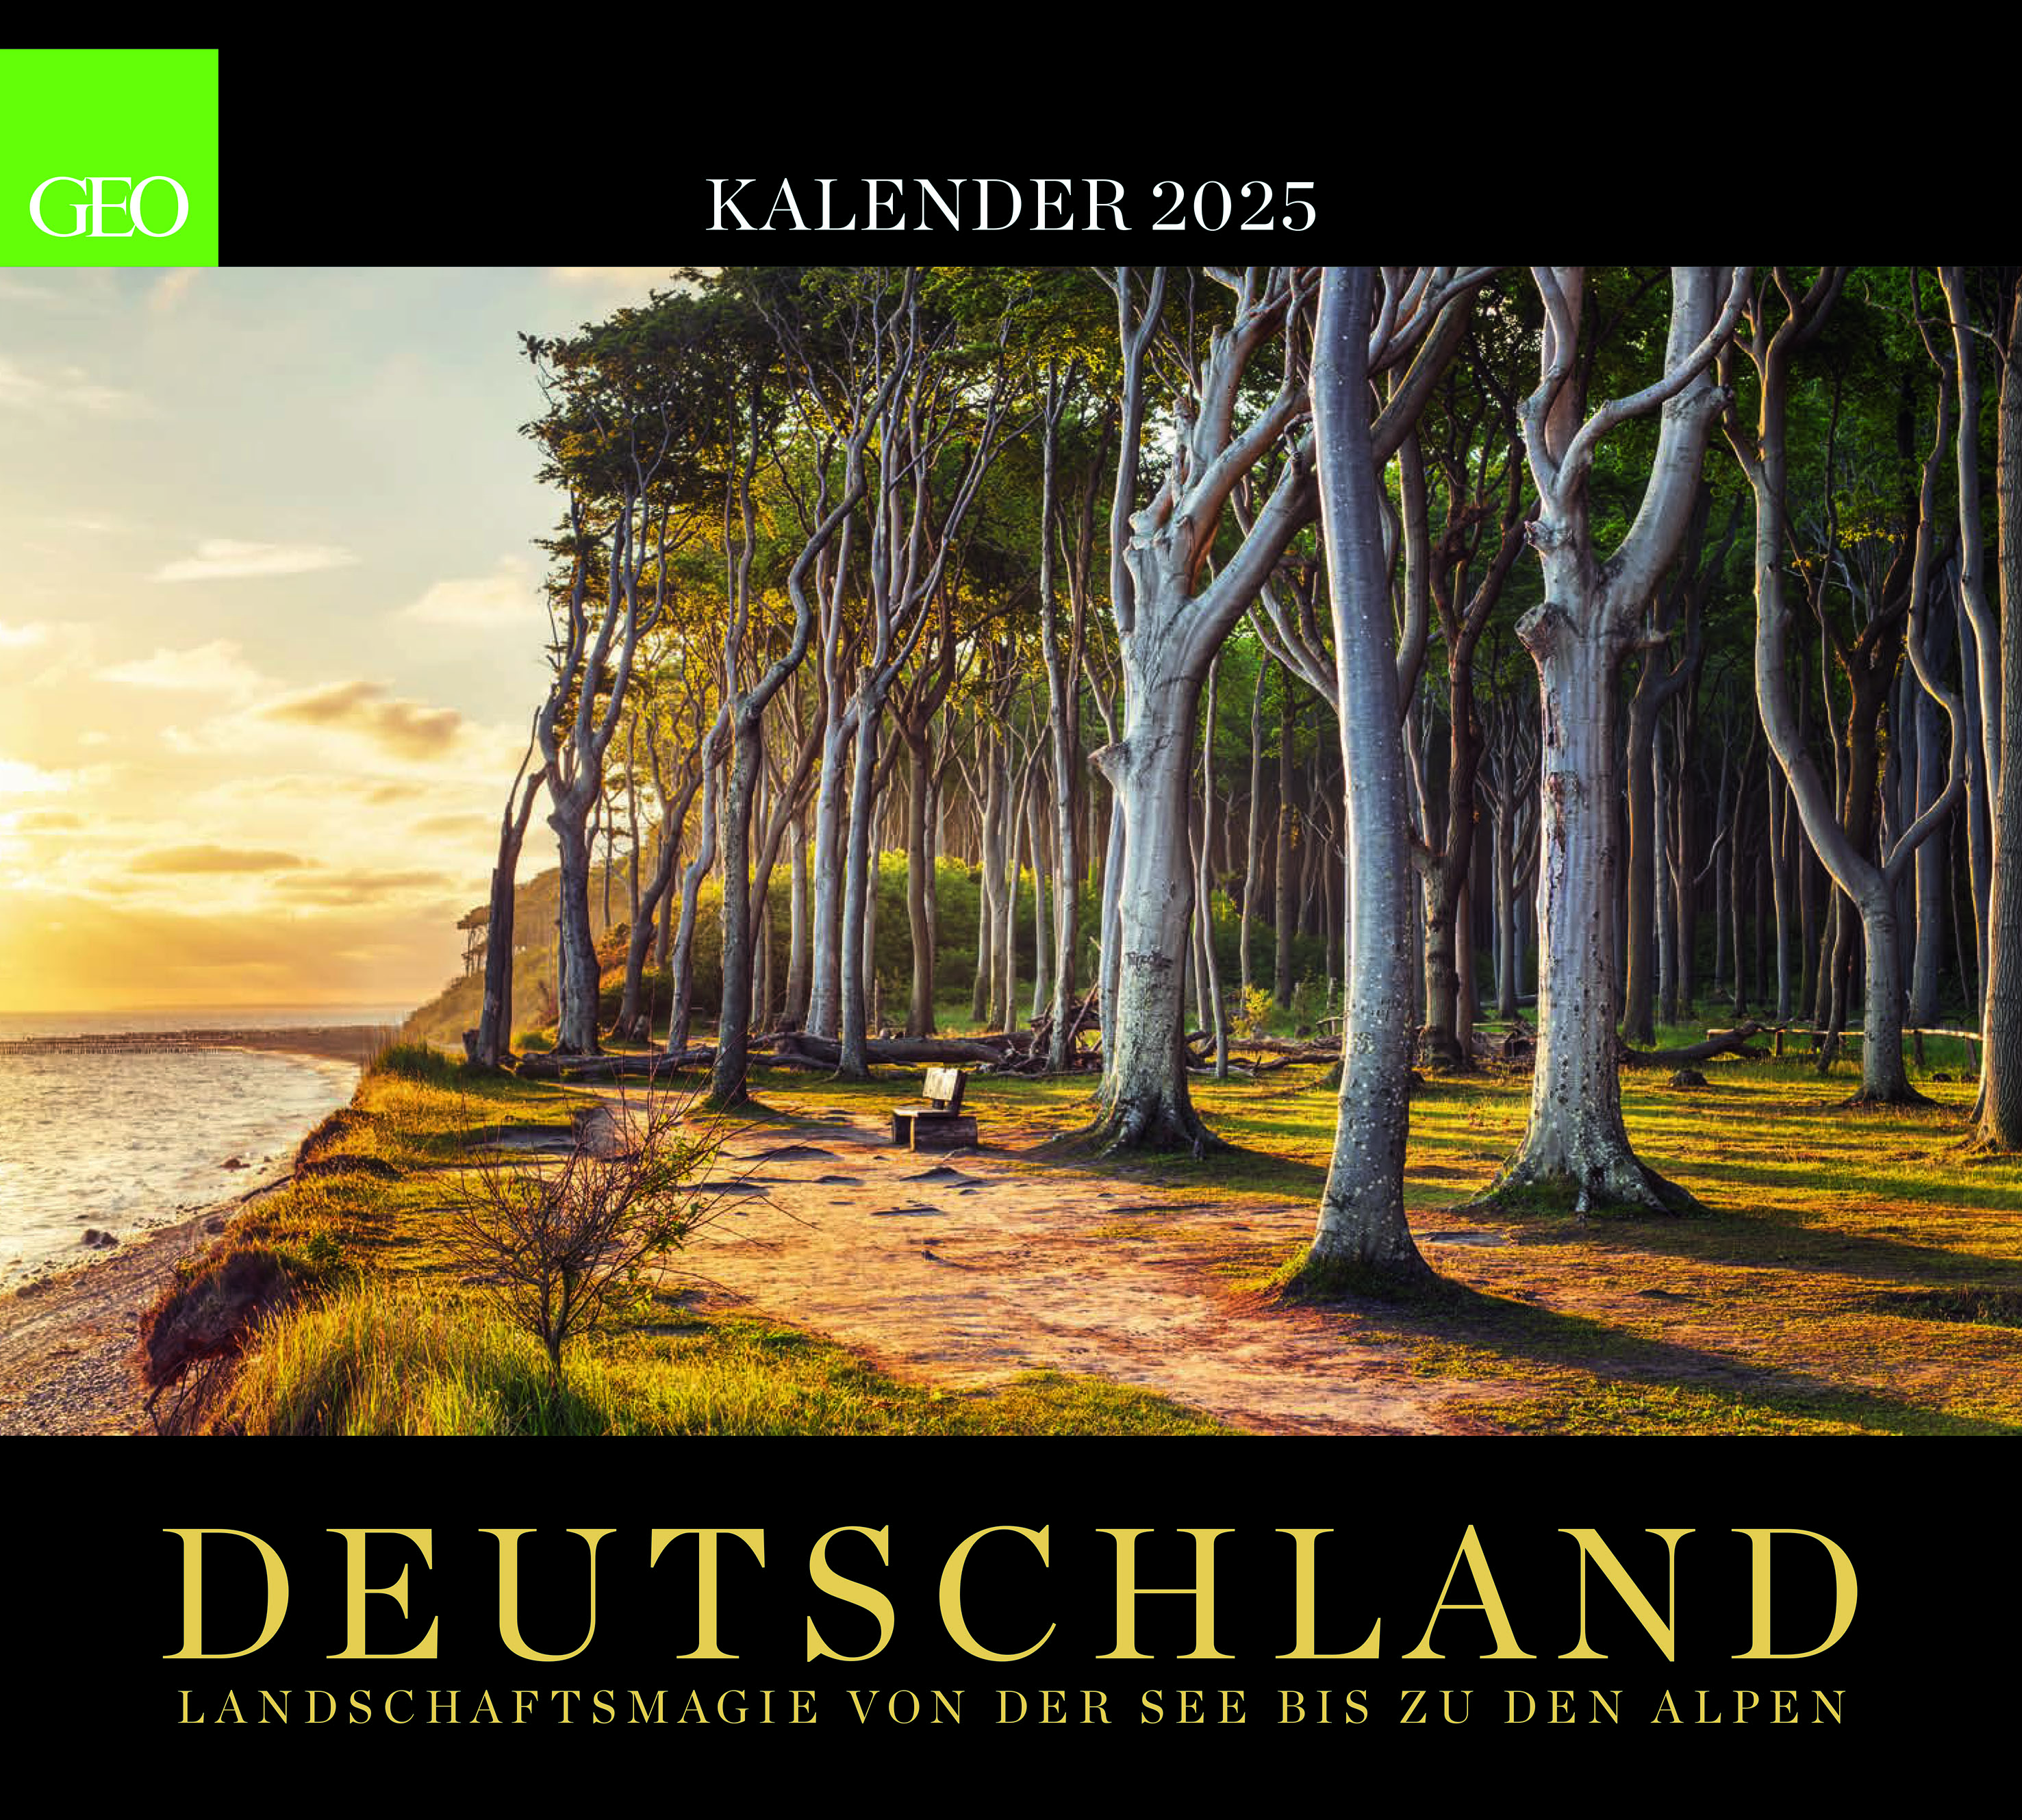 Kalender-Abo "Deutschland" 2025